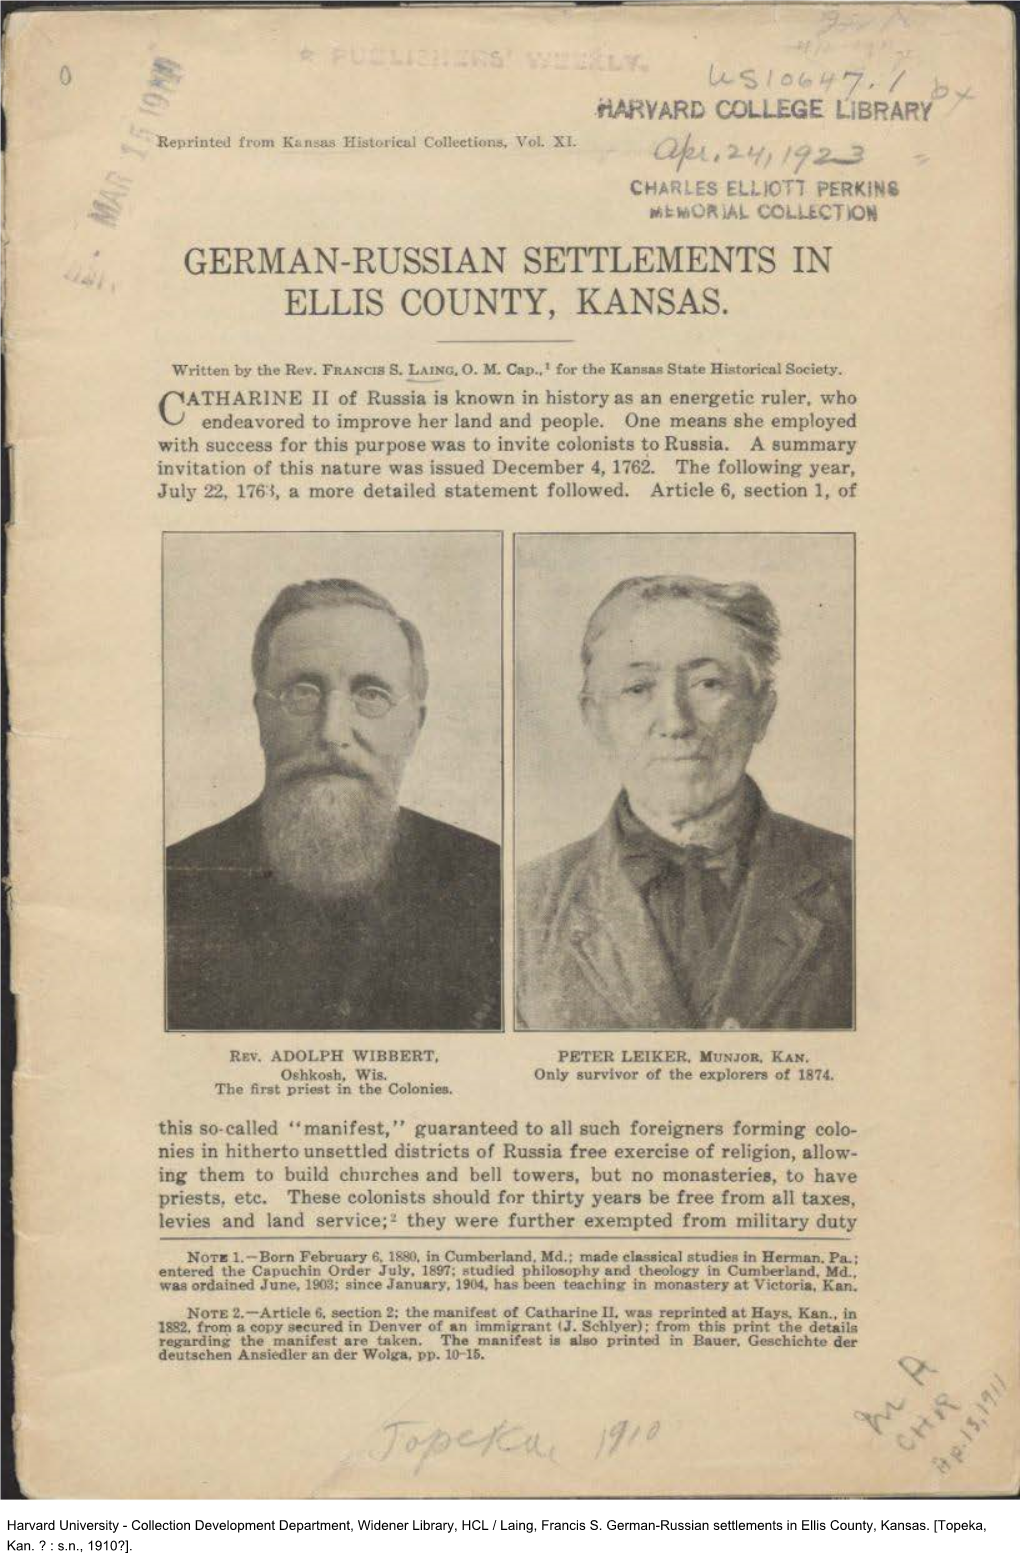 German-Russian Settlements in Ellis County, Kansas